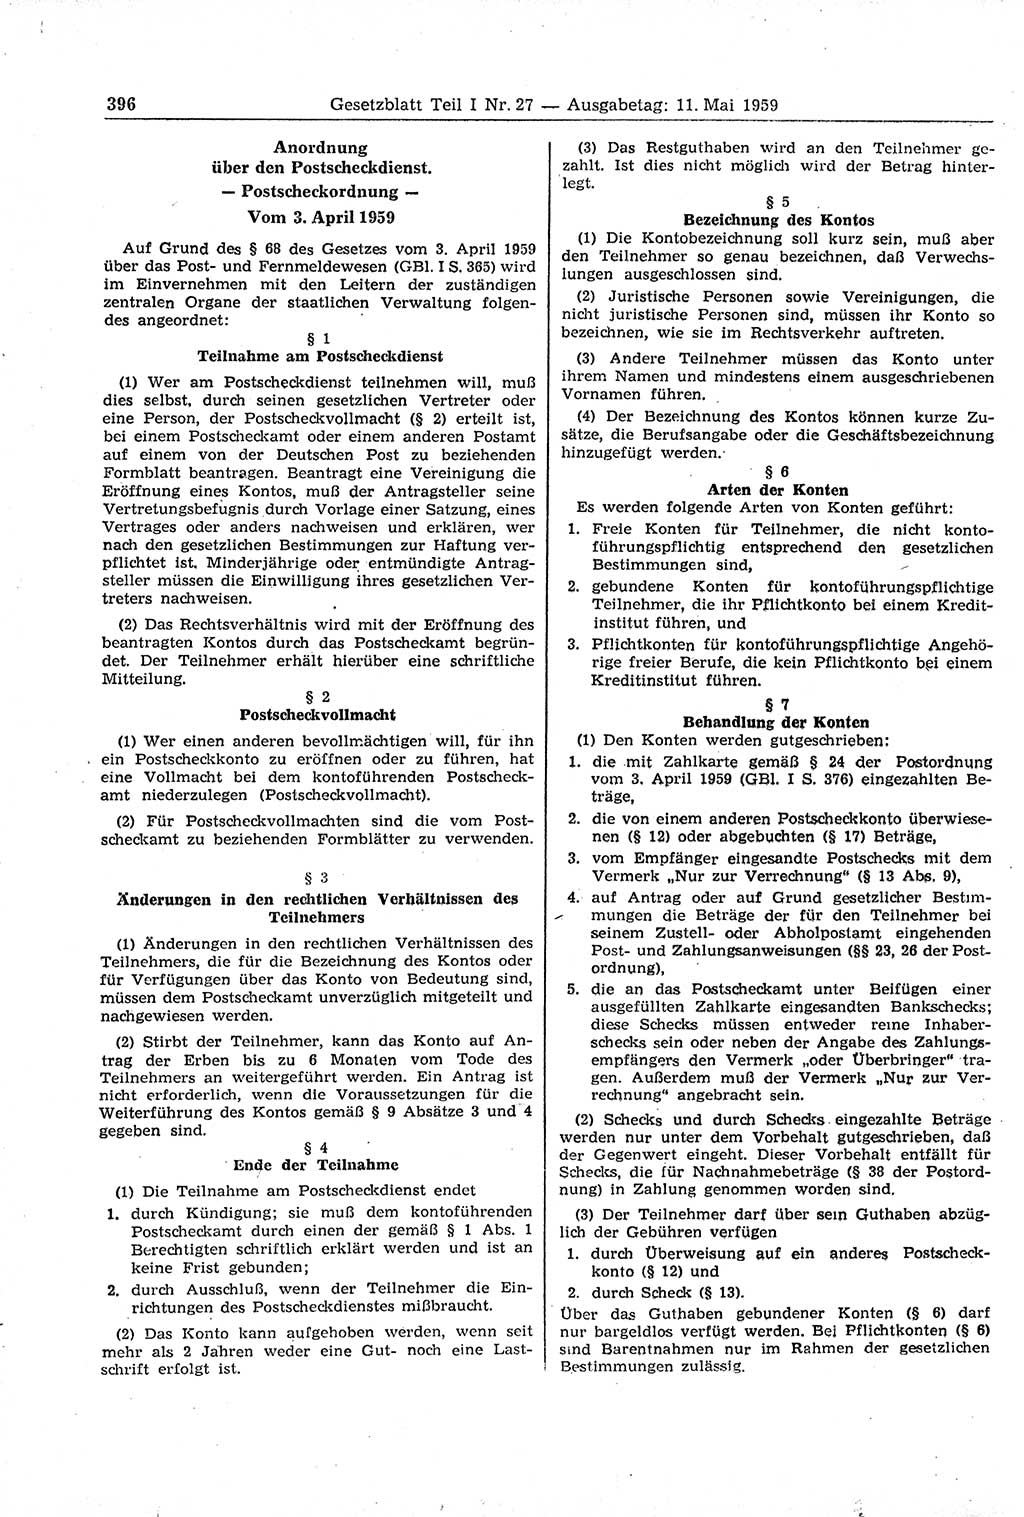 Gesetzblatt (GBl.) der Deutschen Demokratischen Republik (DDR) Teil Ⅰ 1959, Seite 396 (GBl. DDR Ⅰ 1959, S. 396)